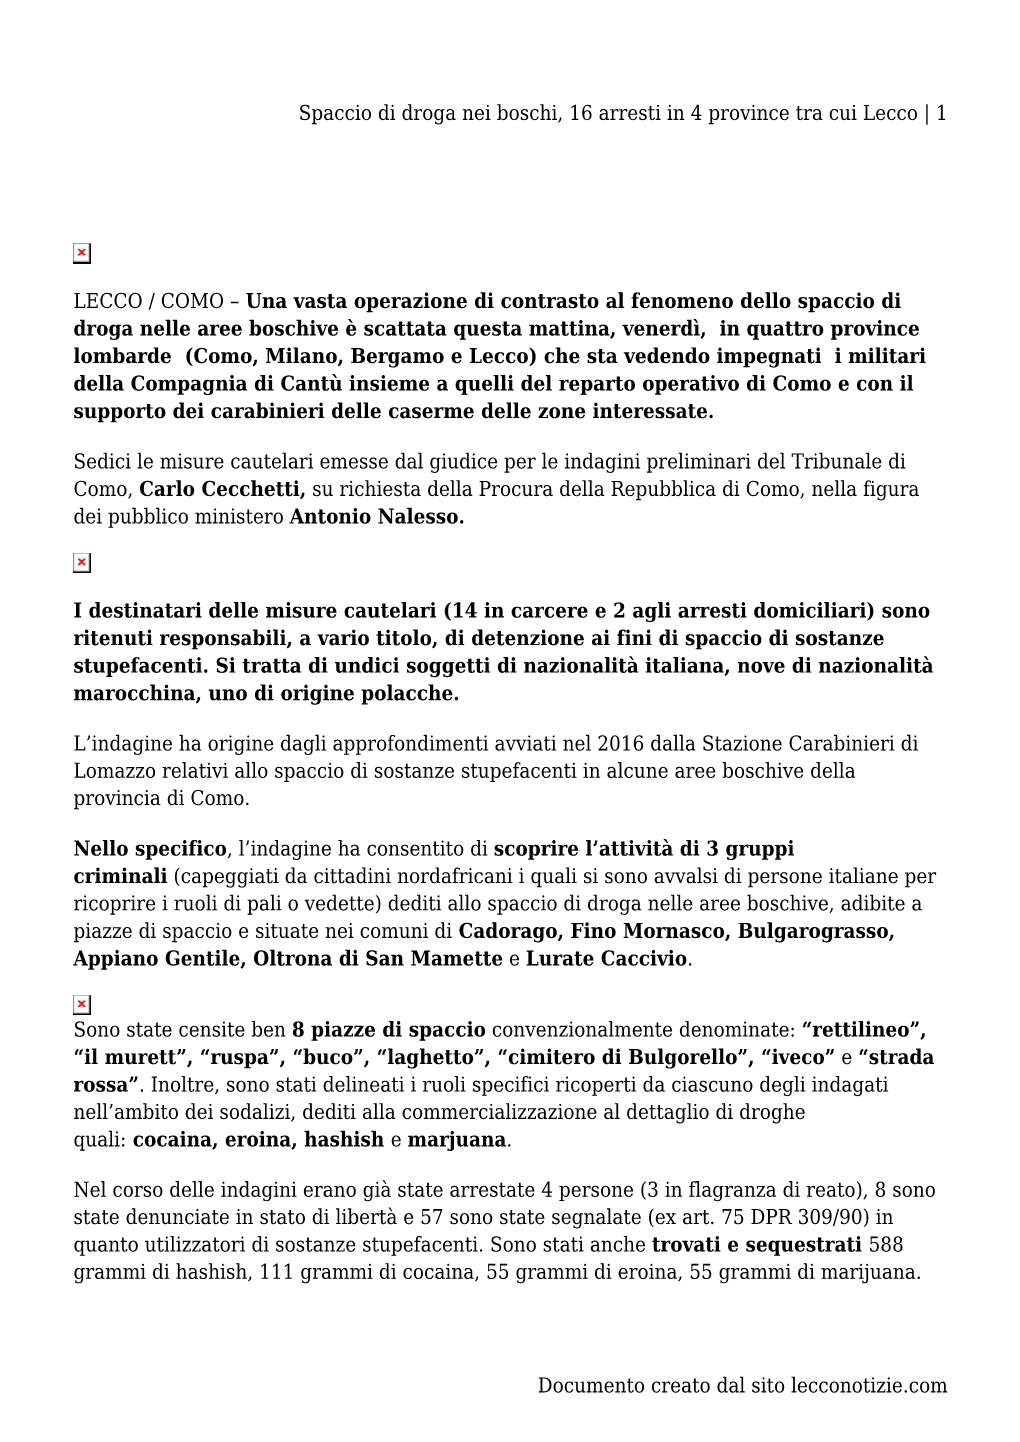 Spaccio Di Droga Nei Boschi, 16 Arresti in 4 Province Tra Cui Lecco | 1